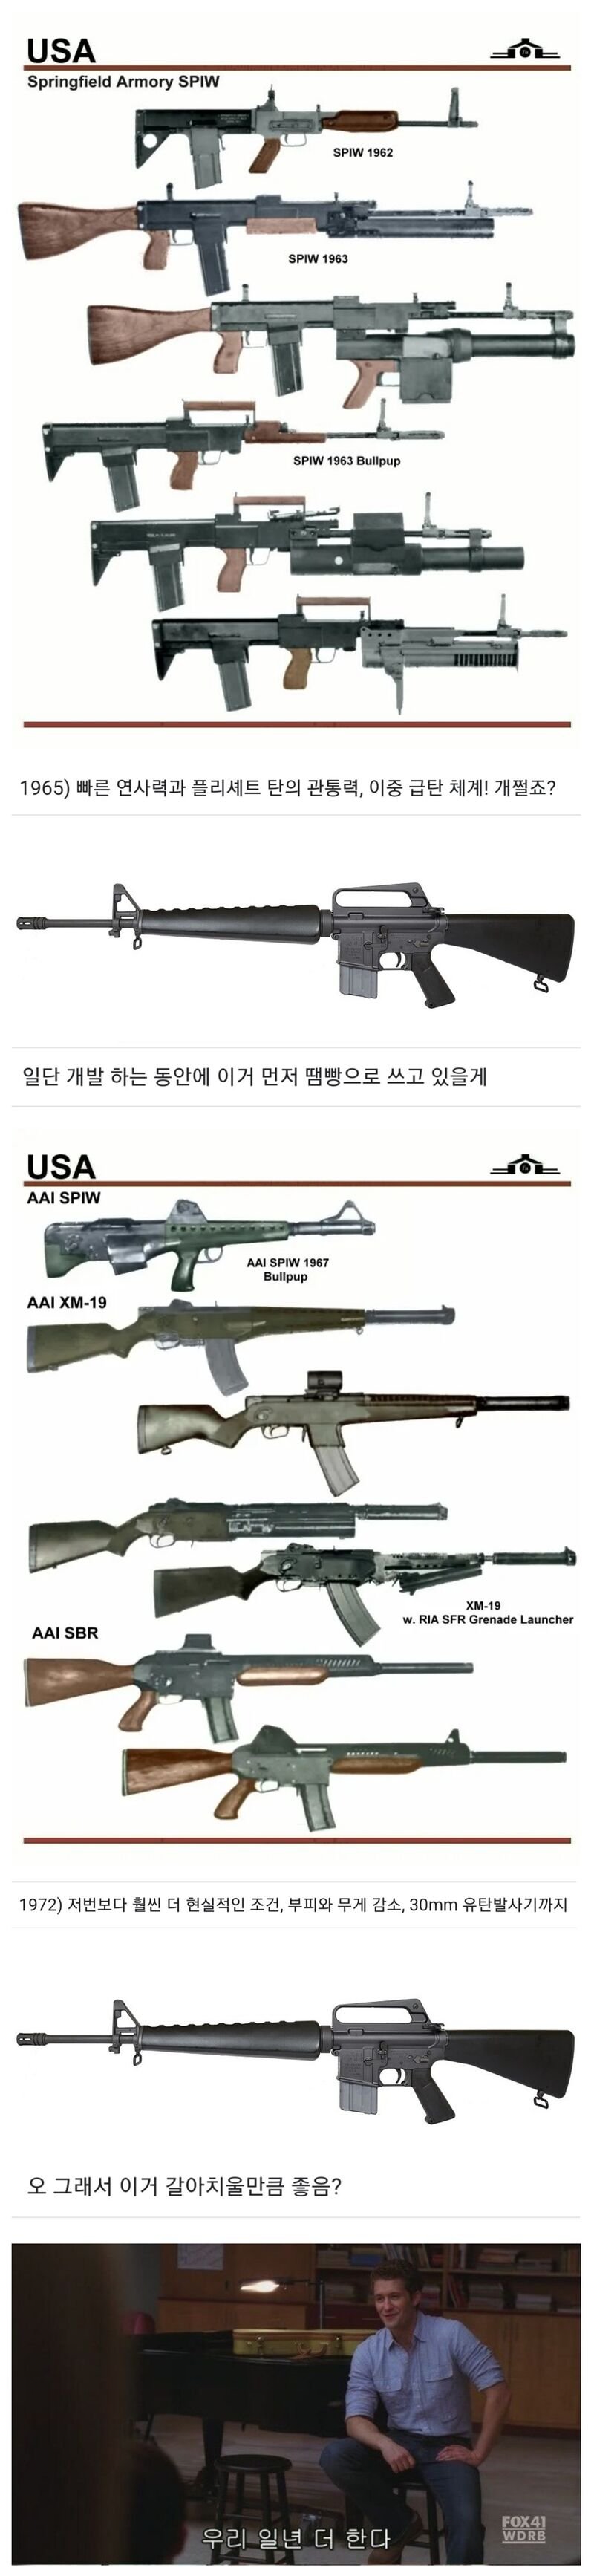 미국서 진행하는 총기사업의 특징